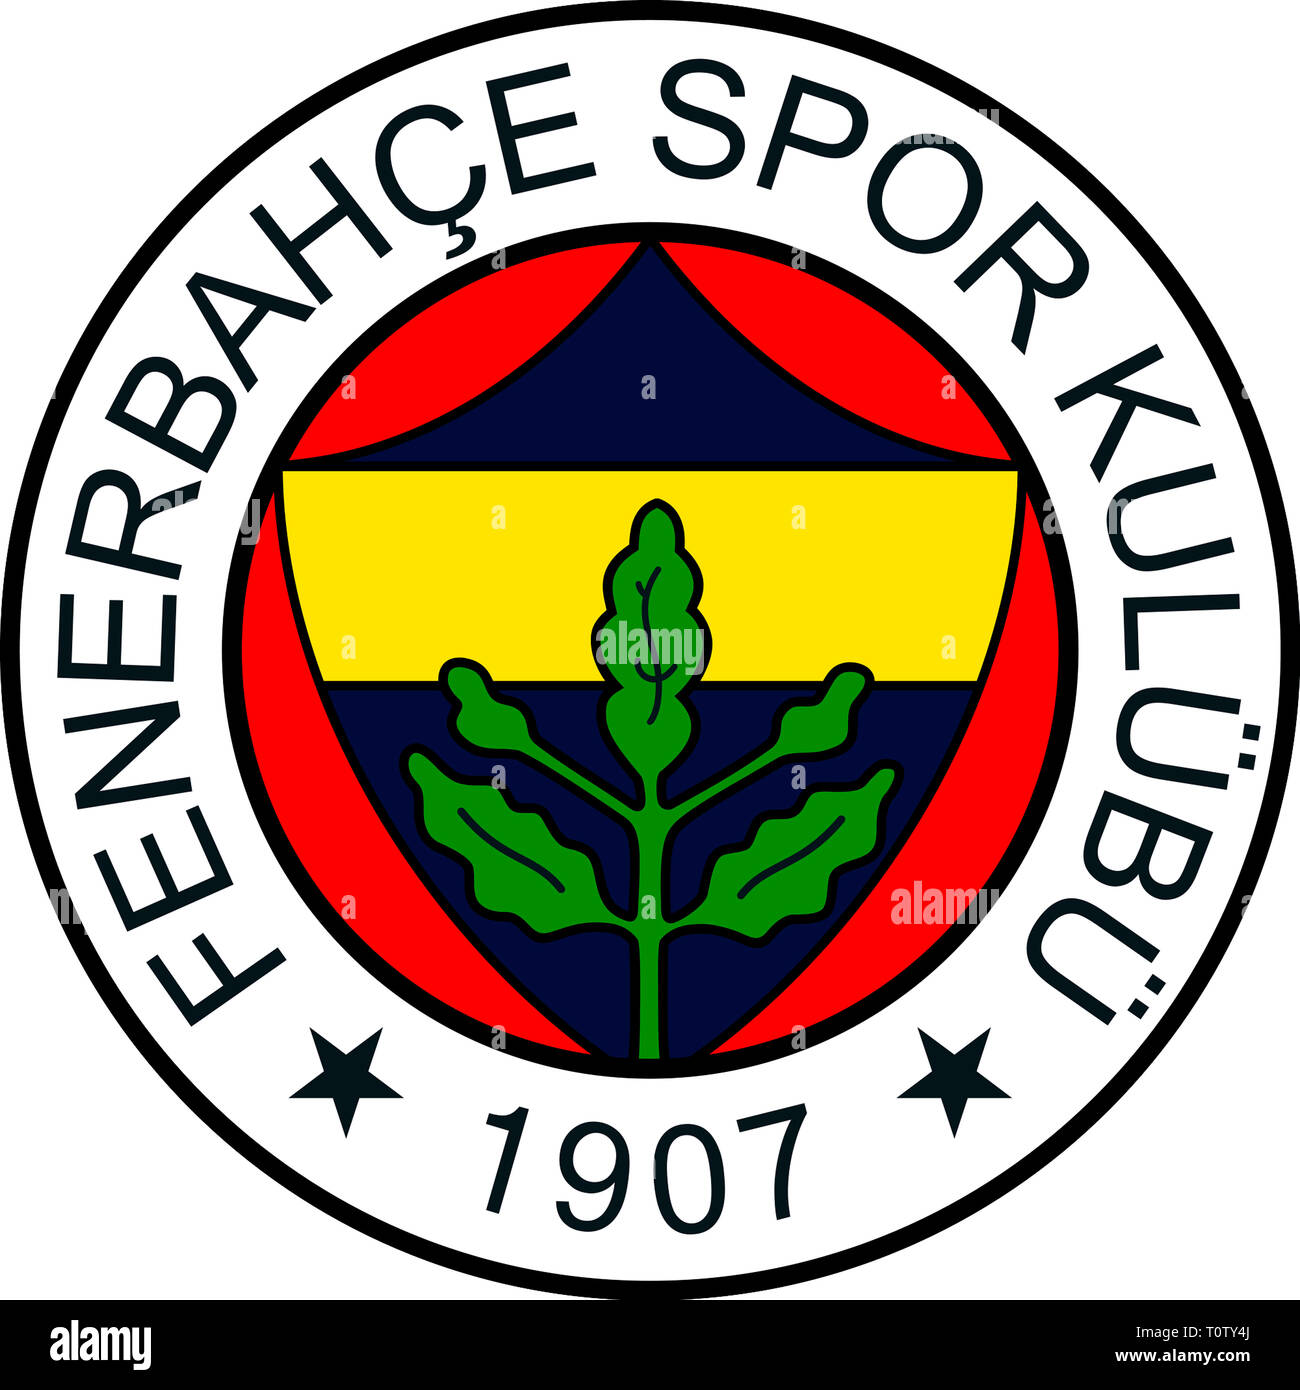 Logo der türkischen Fußball-Nationalmannschaft Fenerbahce Istanbul - Türkei  Stockfotografie - Alamy